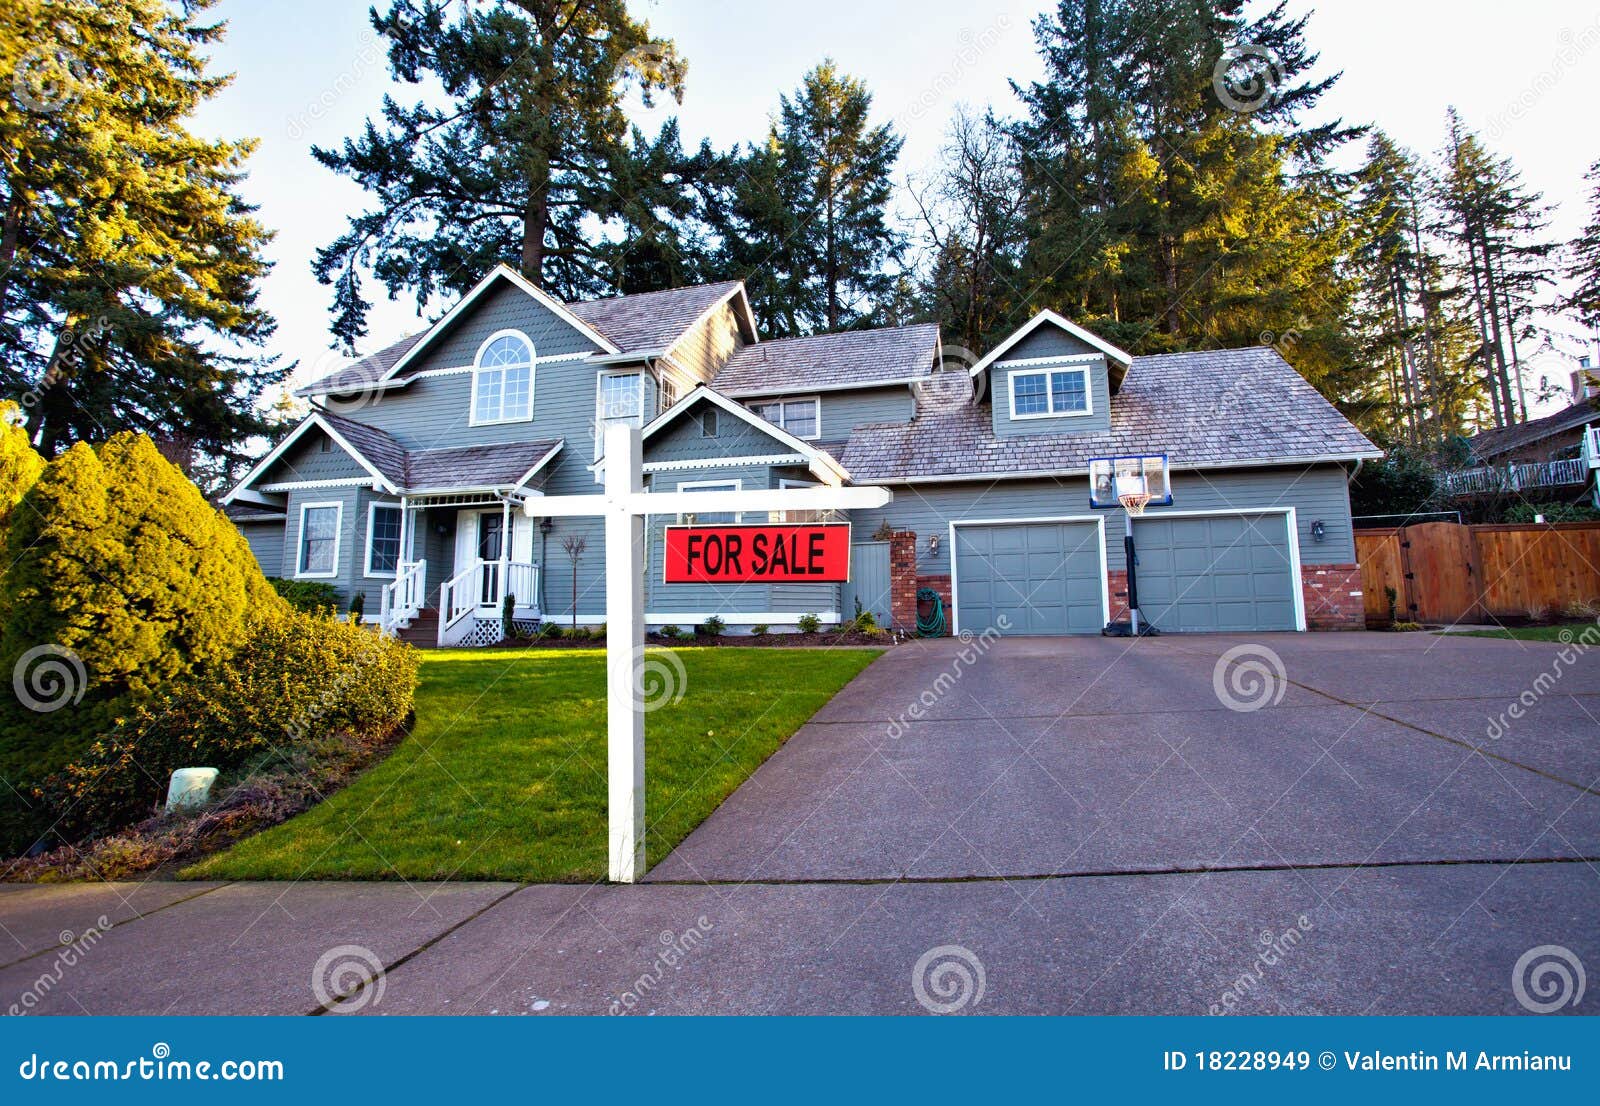 suburban house for sale